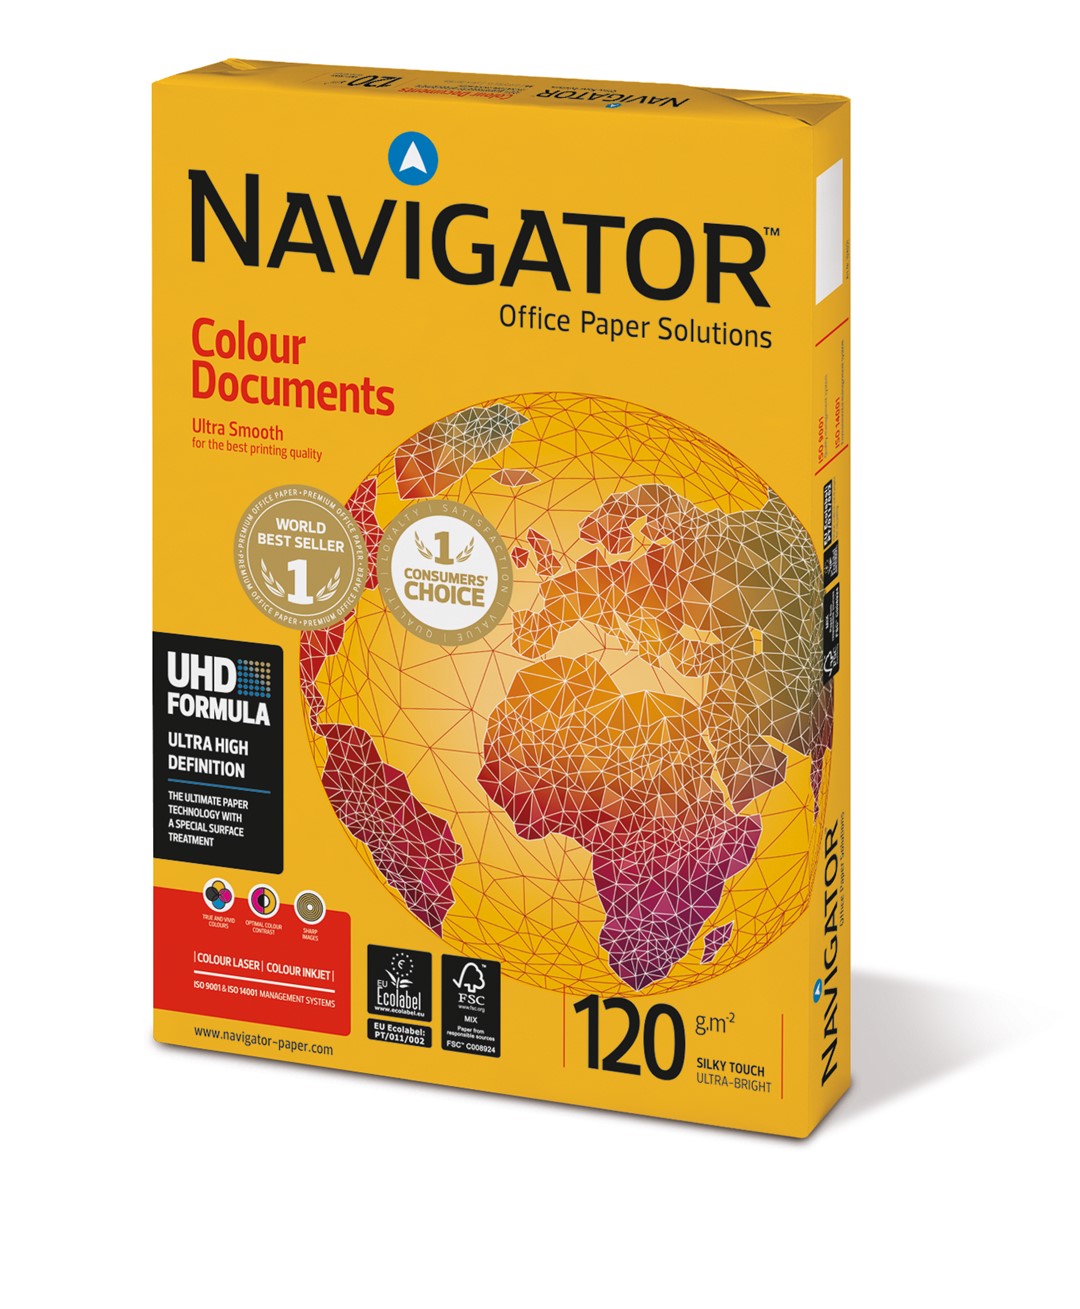 Papier ksero biały A4/120g 250 arkuszy Navigator Colour Documents